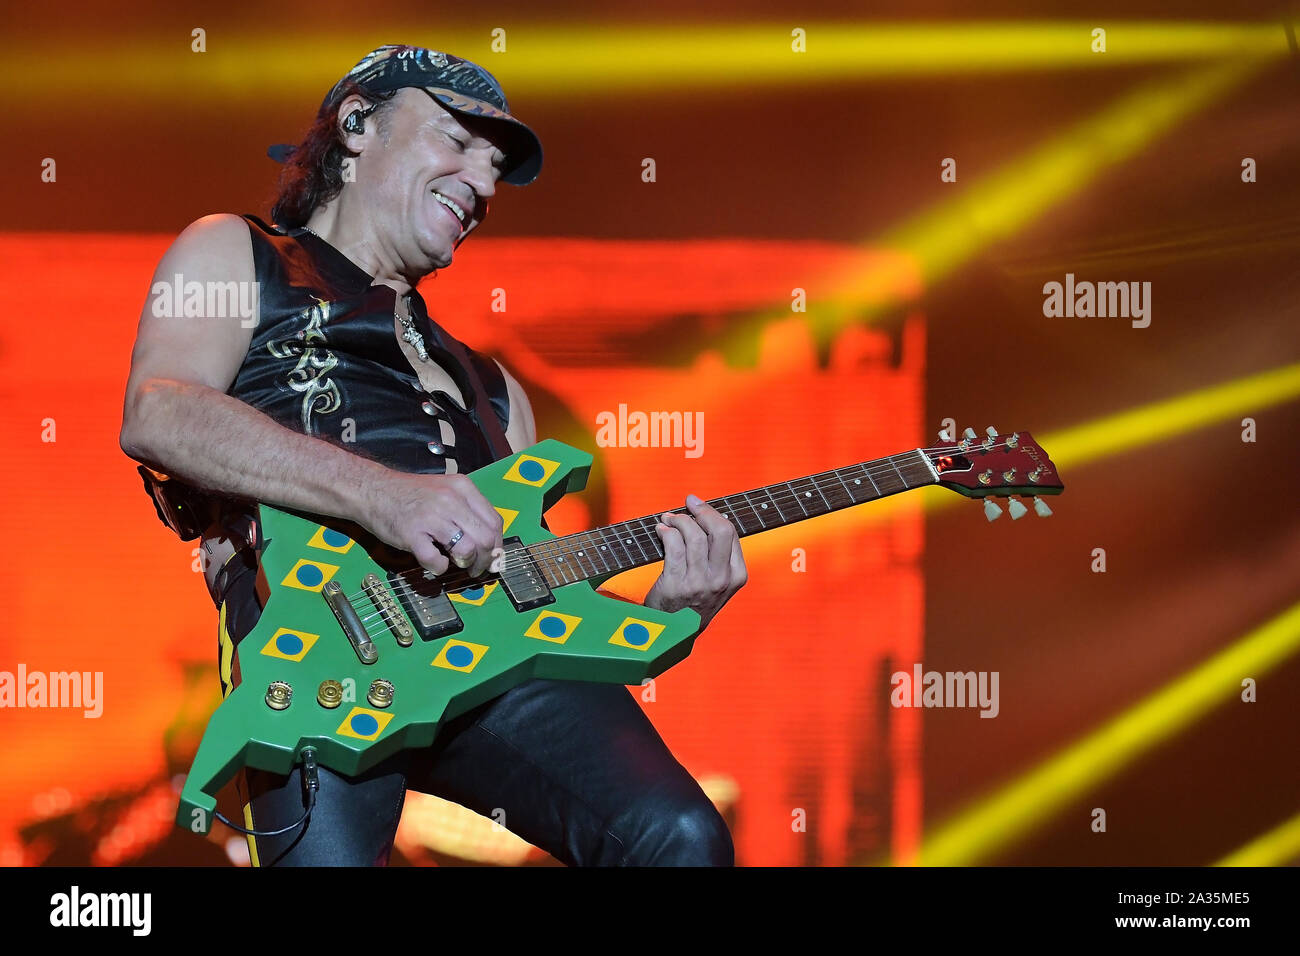 Rio de Janeiro, Brasile, 4 ottobre 2019. Il chitarrista Matthias Jabs della rock band Scorpions durante uno spettacolo al Rock in Rio a Rio de Janeiro. Foto Stock